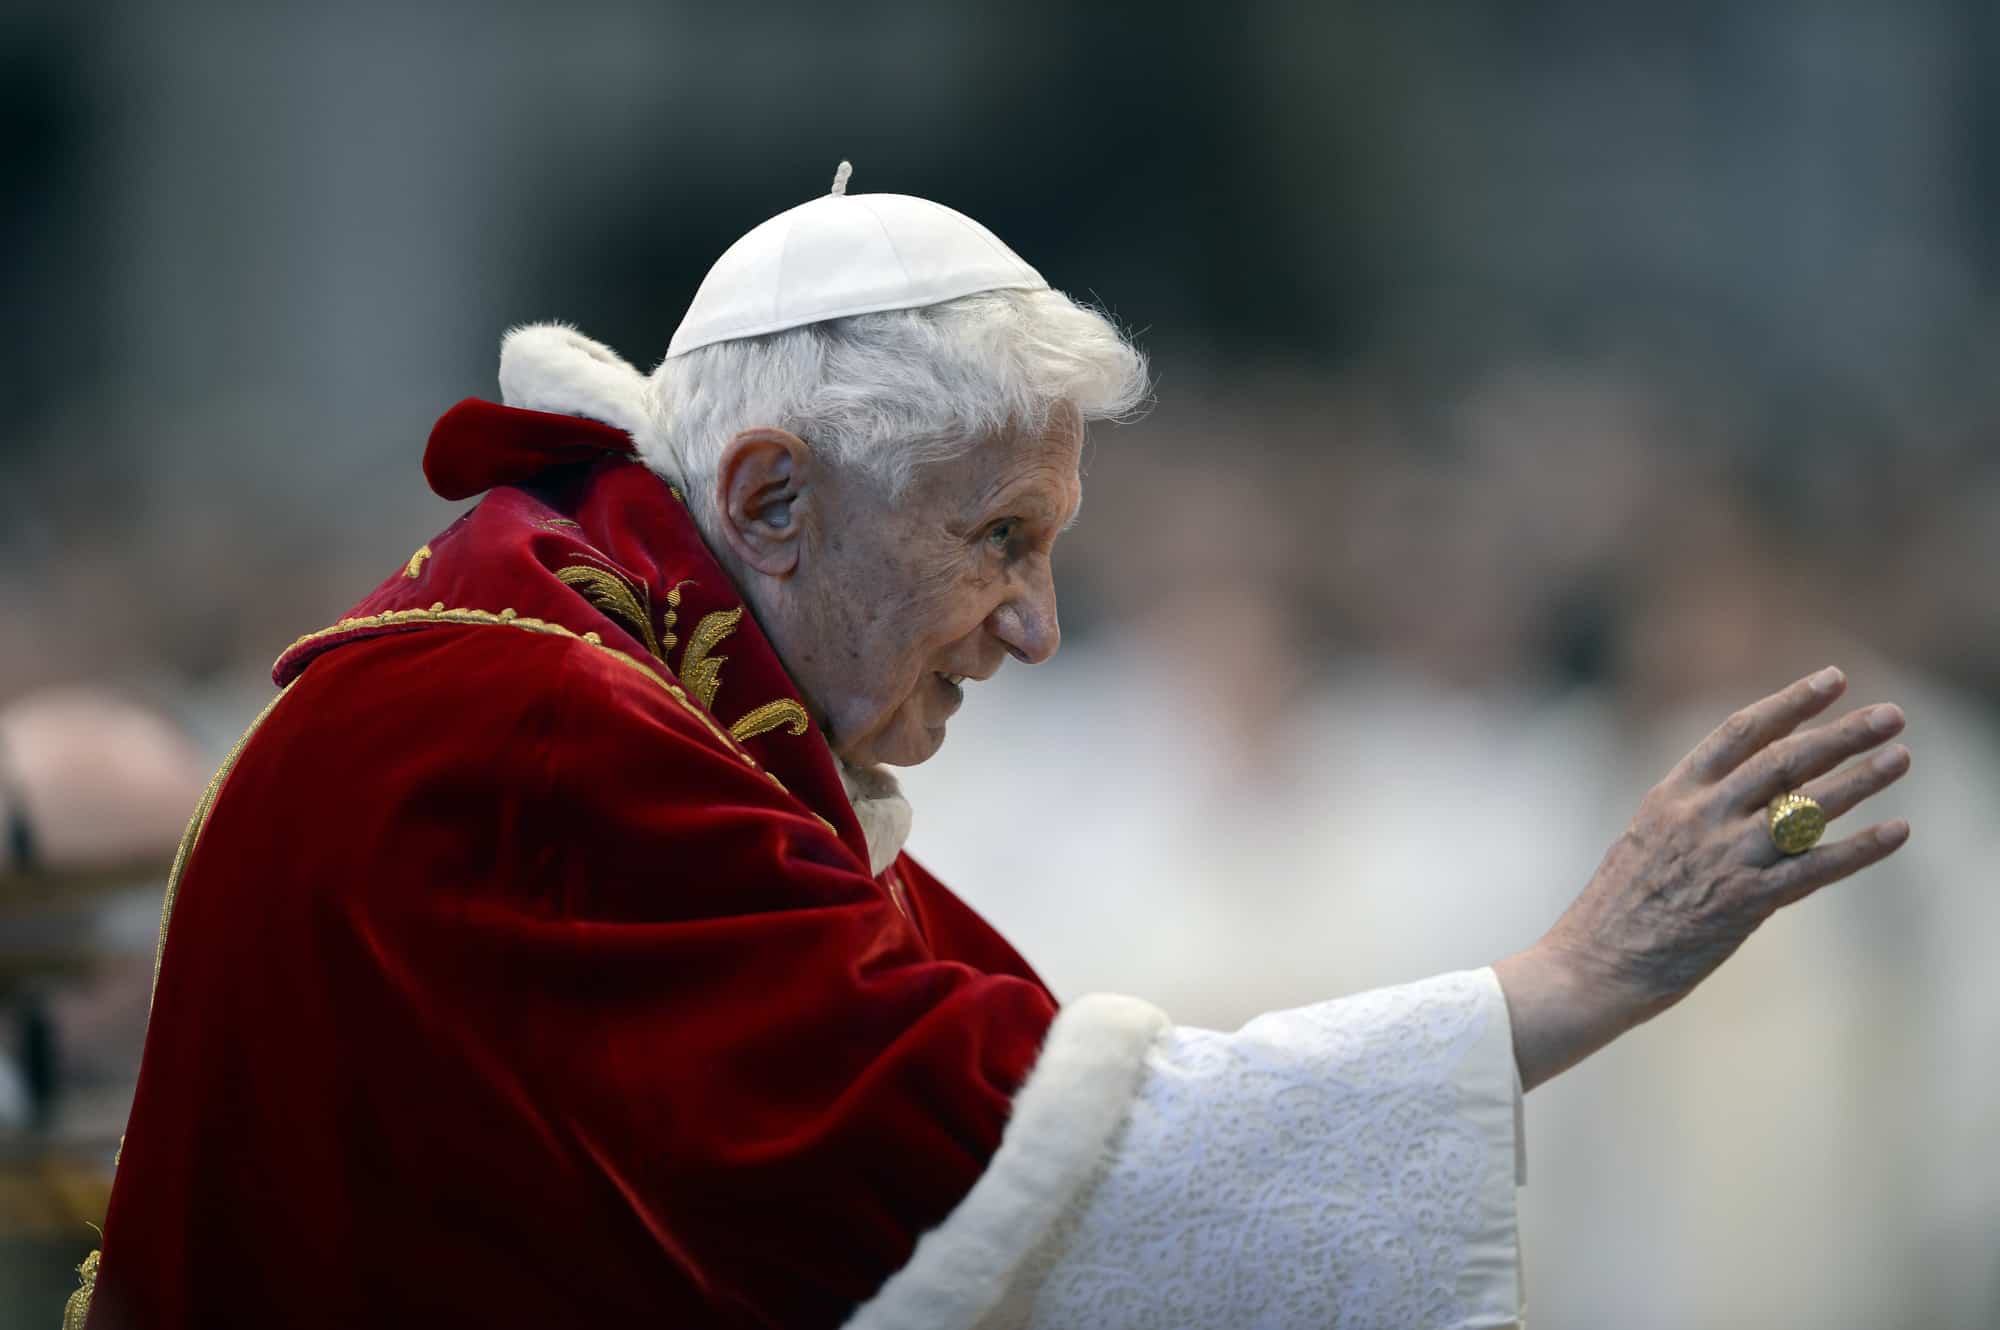 El Papa Benedicto XVI saluda al salir después de la misa en la Basílica de San Pedro para conmemorar el 900 aniversario de la Orden de los Caballeros de Malta, el 9 de febrero de 2013 en el Vaticano.